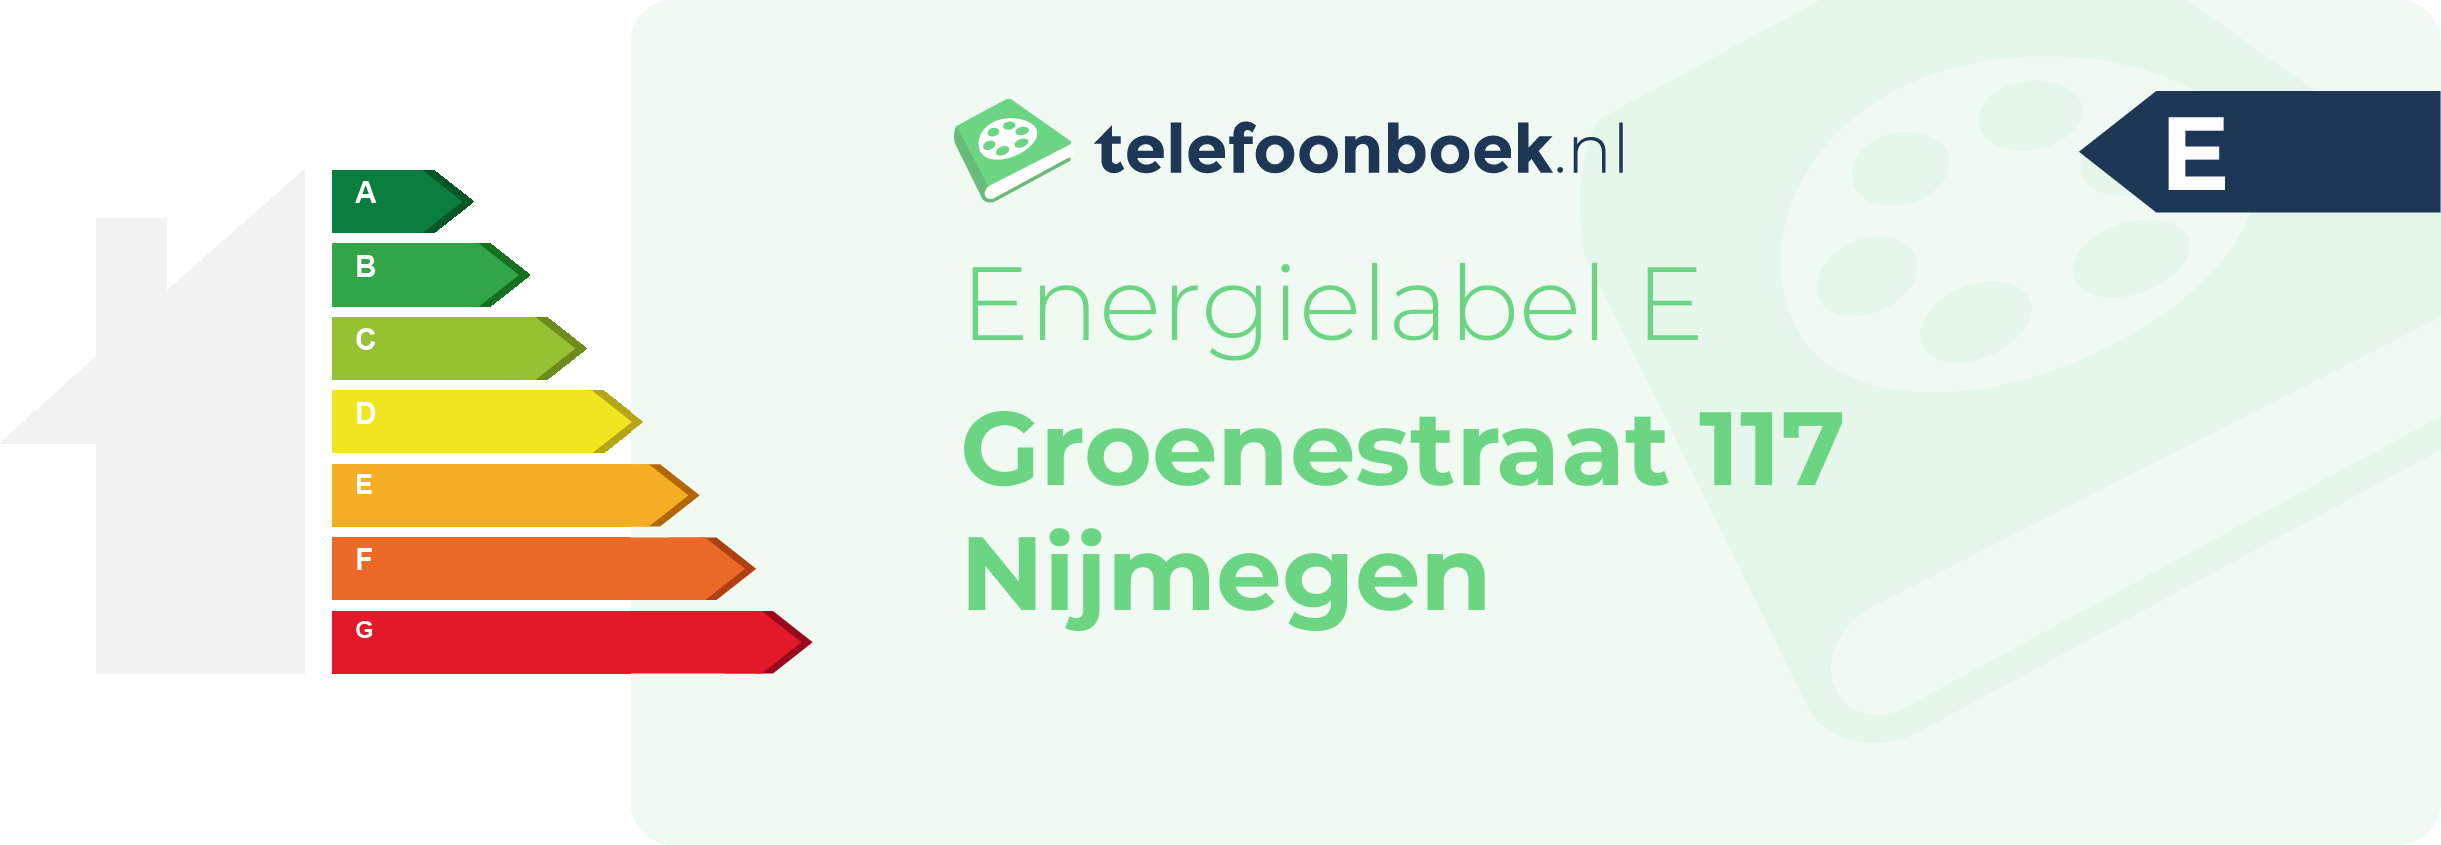 Energielabel Groenestraat 117 Nijmegen